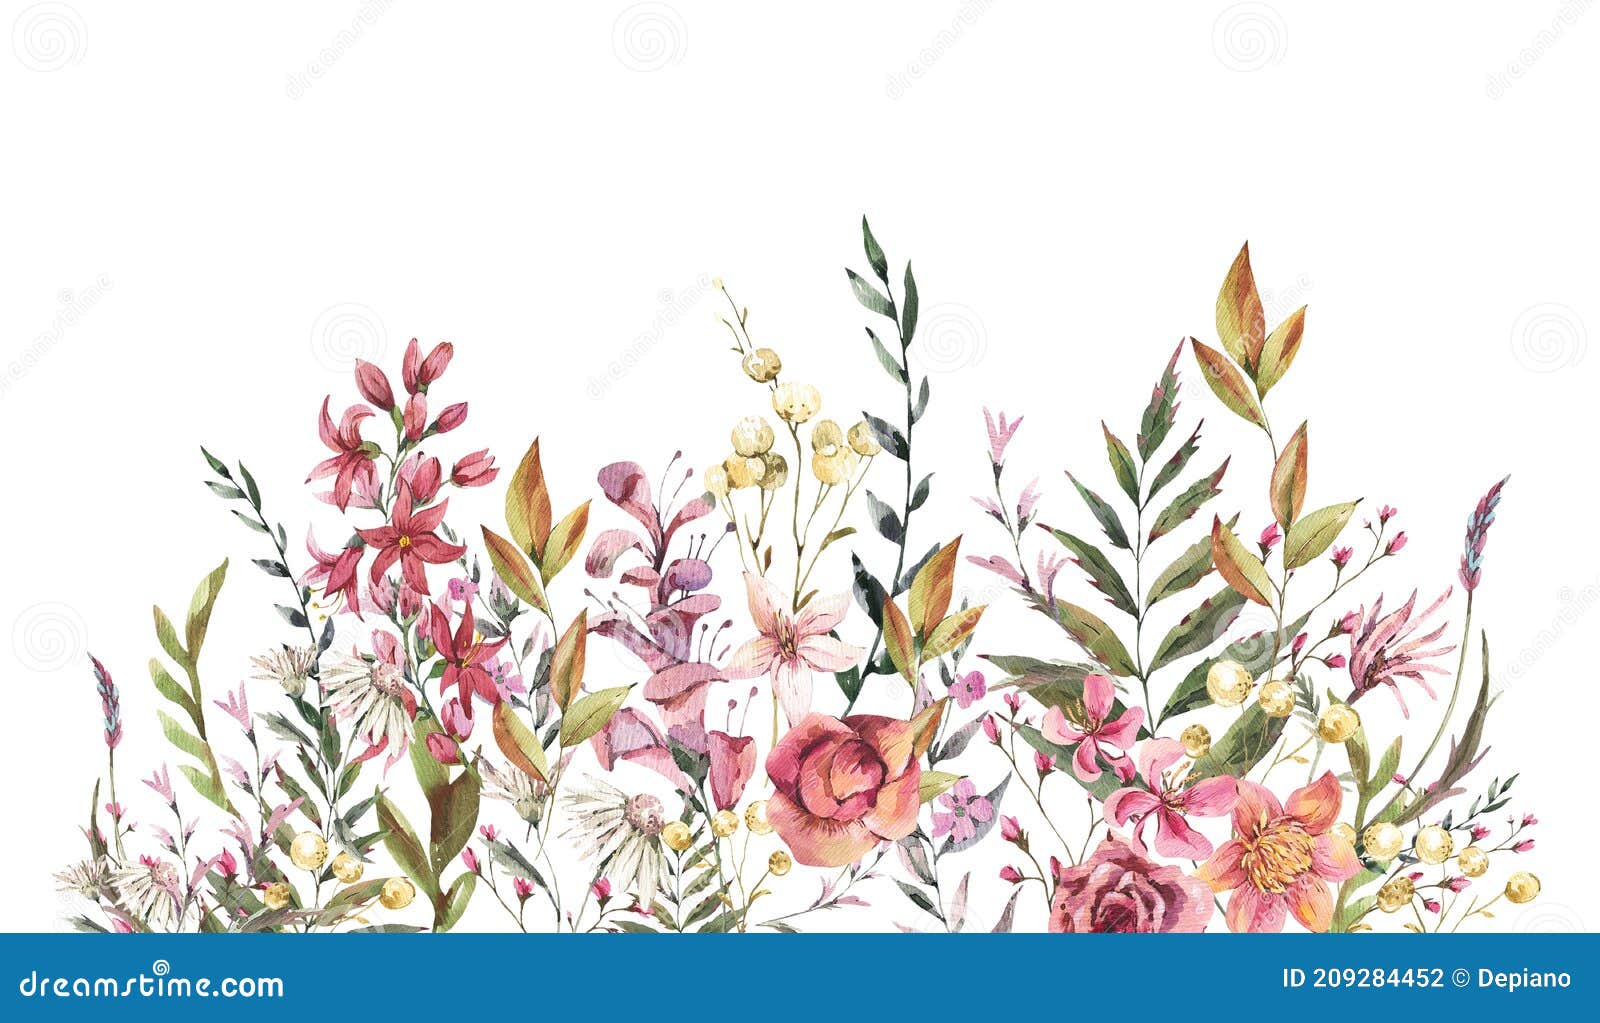 watercolor vintage wildflowers greeting card